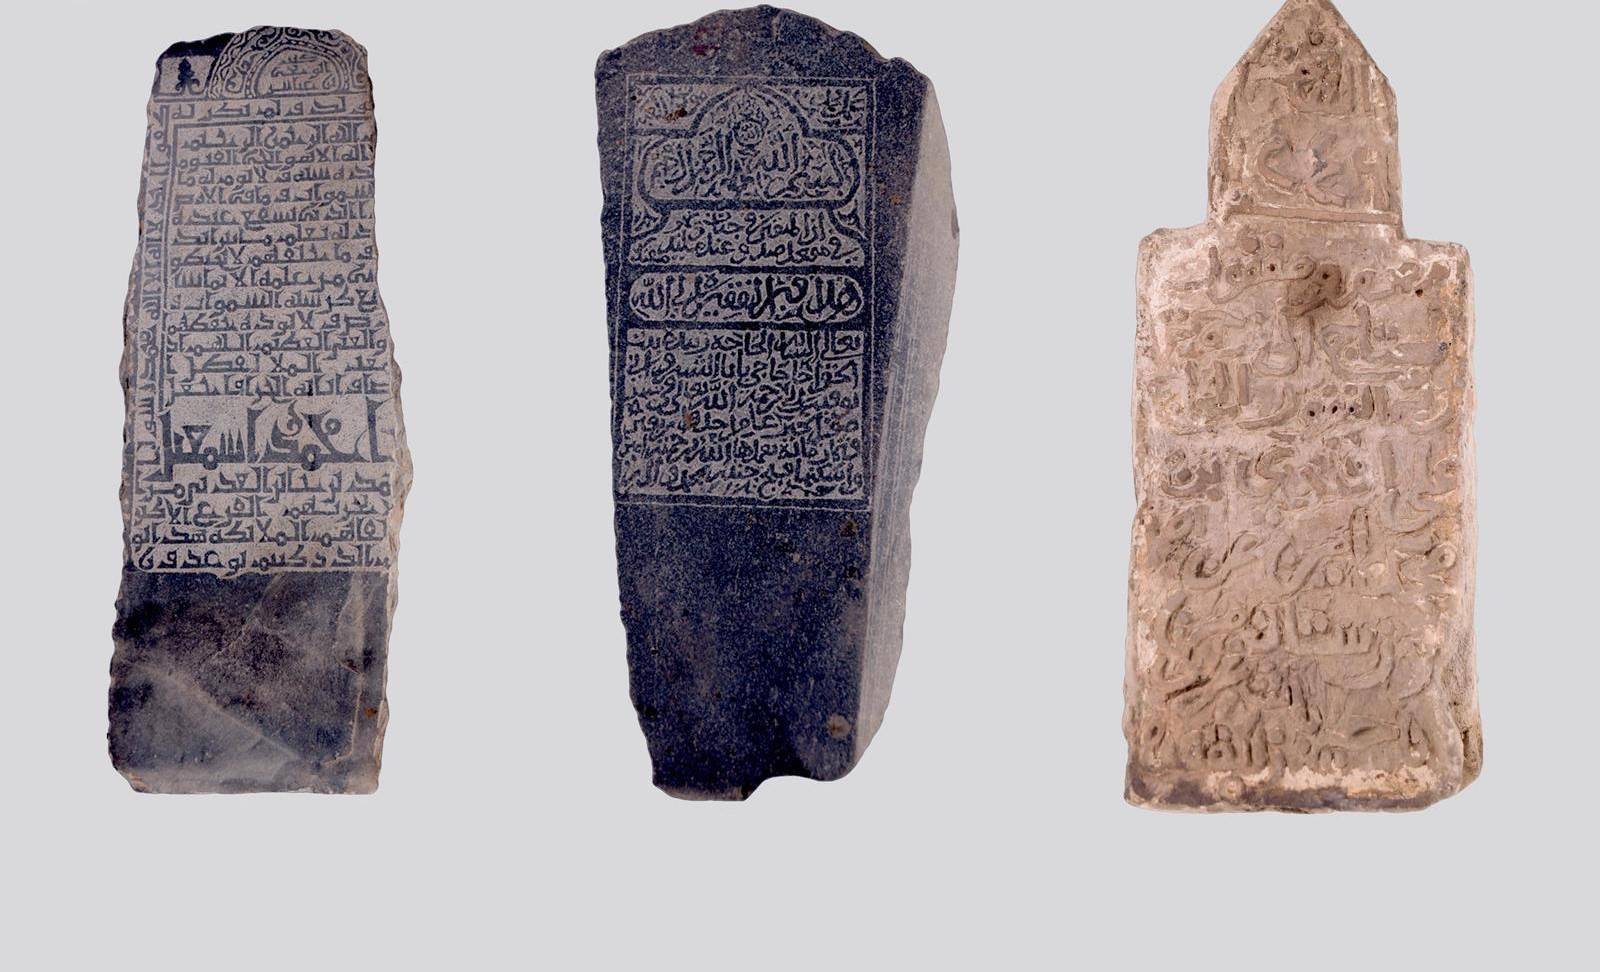 شواهد قبور من الأحجار المنقبية والغرانيت والرخام حُفر عليها بعض الكتابات وجدت في مقابر جدة التاريخية (واس)